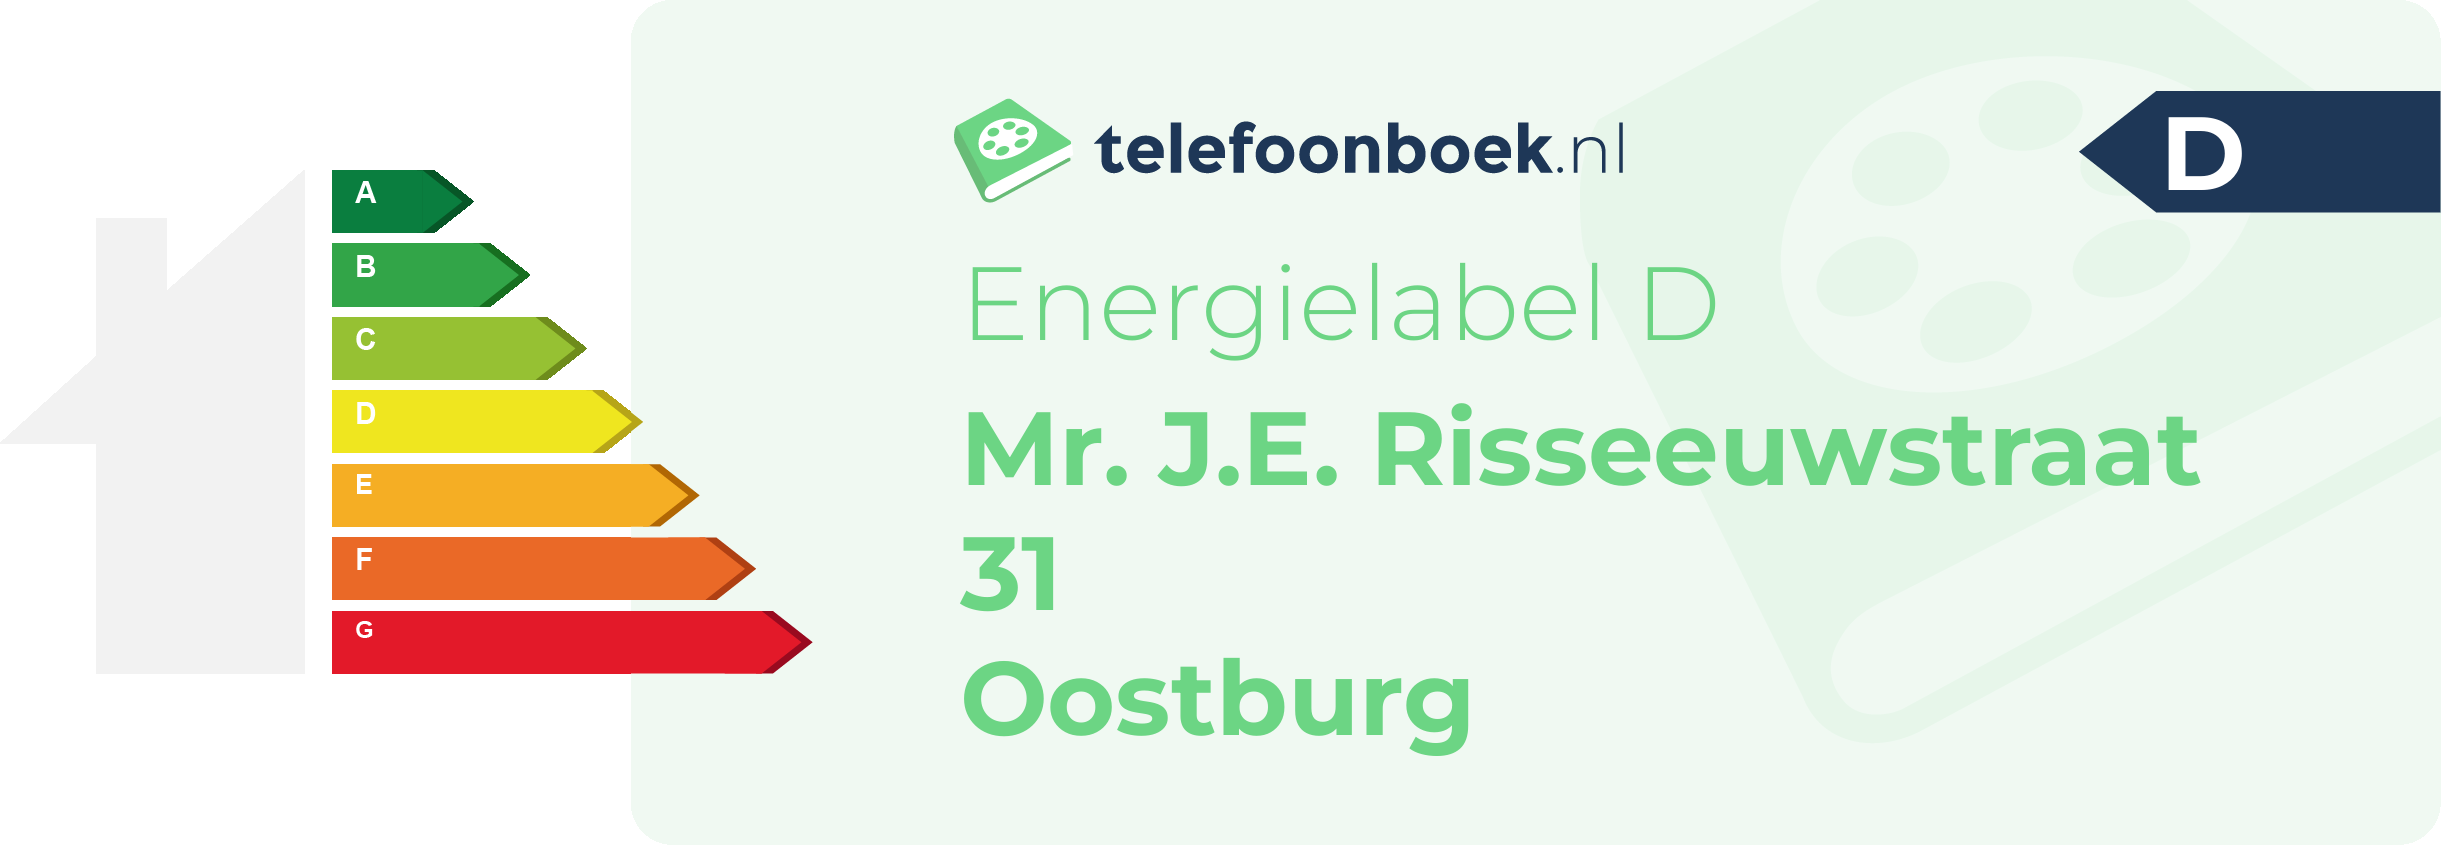 Energielabel Mr. J.E. Risseeuwstraat 31 Oostburg